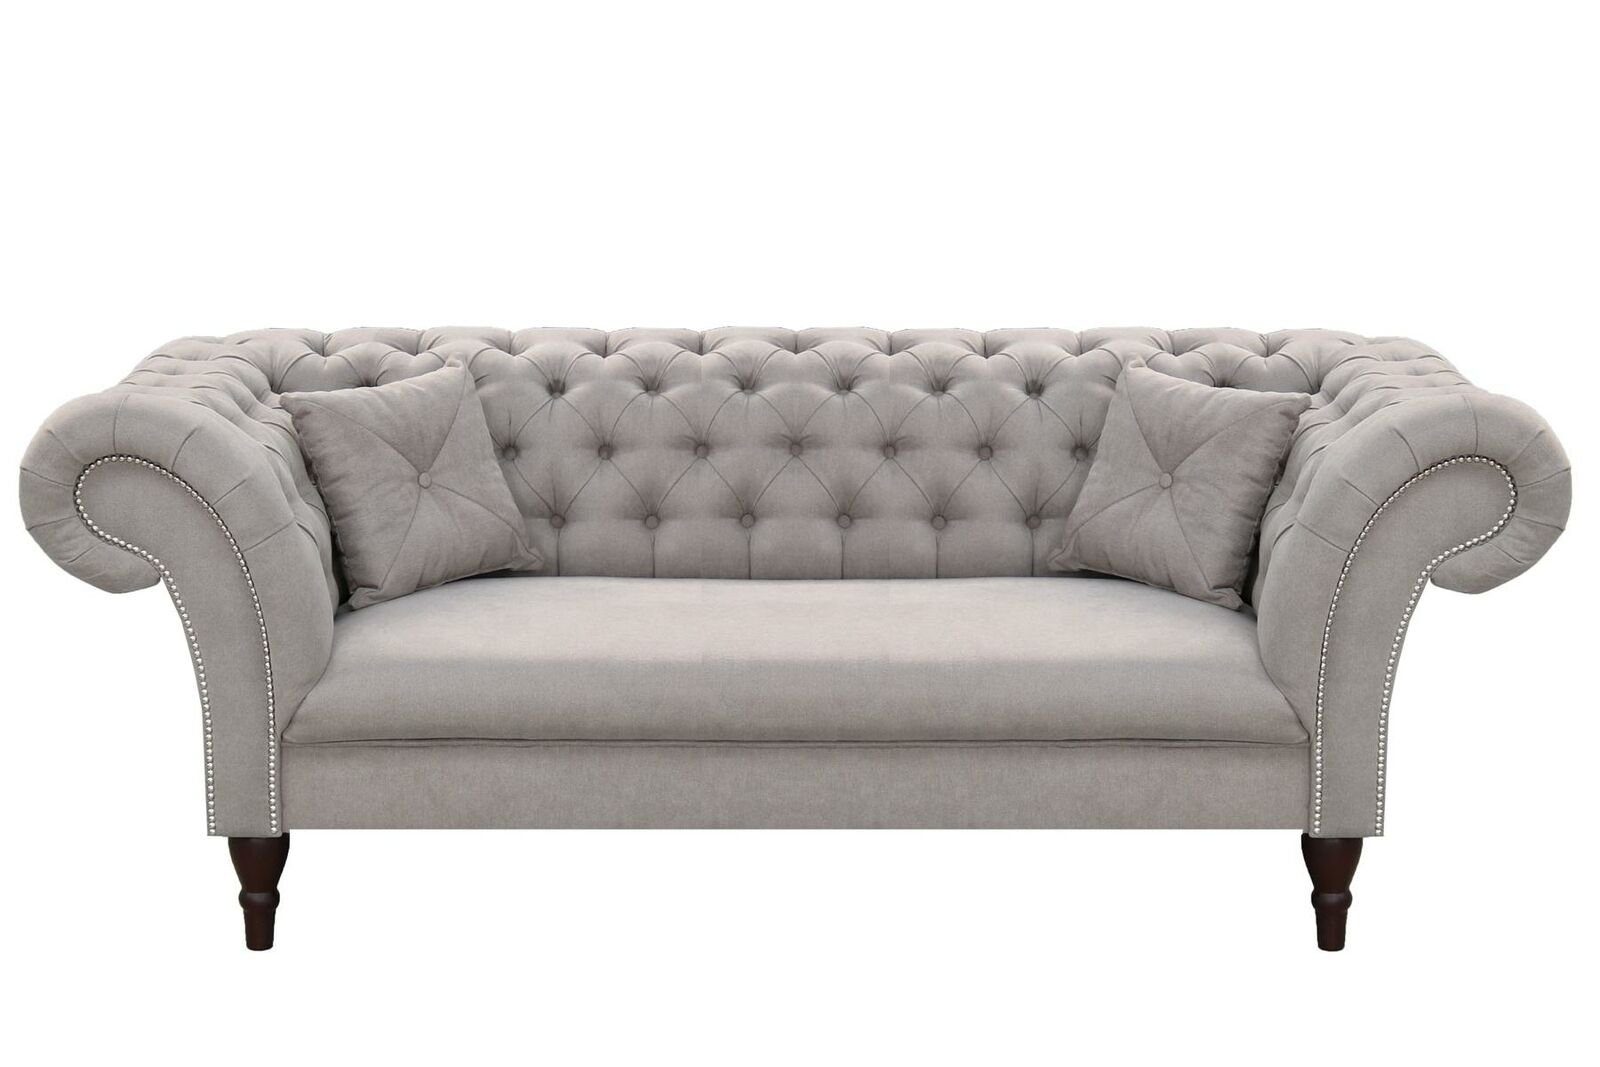 JVmoebel Sofa Grauer Dreisitzer Couch Chesterfield Design Möbel Luxus 3-er Brandneu, Made in Europe